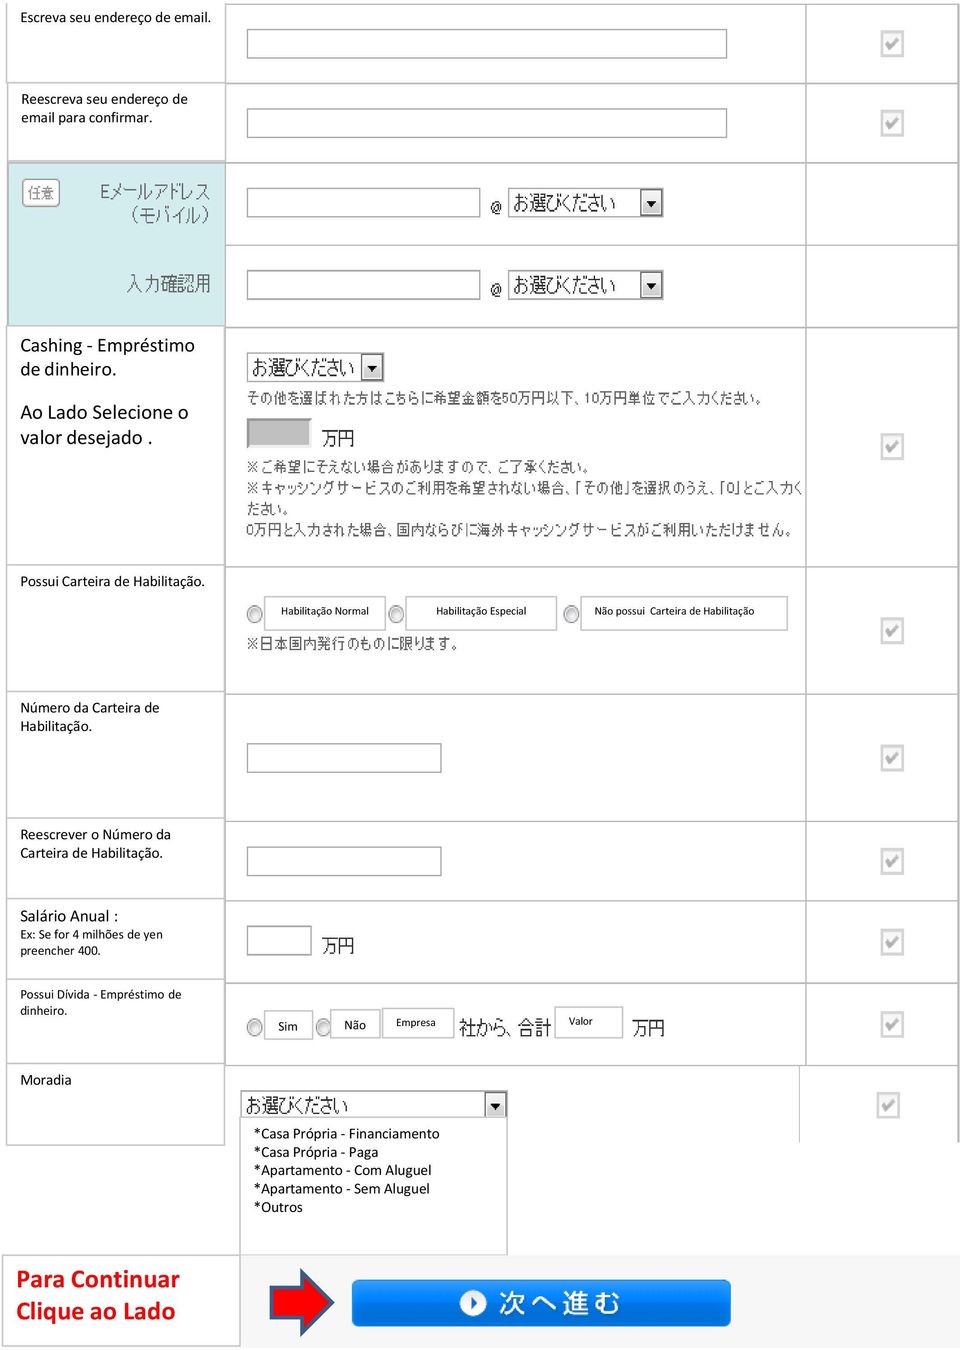 Reescrever o Número da Carteira de Habilitação. Salário Anual : Ex: Se for 4 milhões de yen preencher 400. Possui Dívida - Empréstimo de dinheiro.